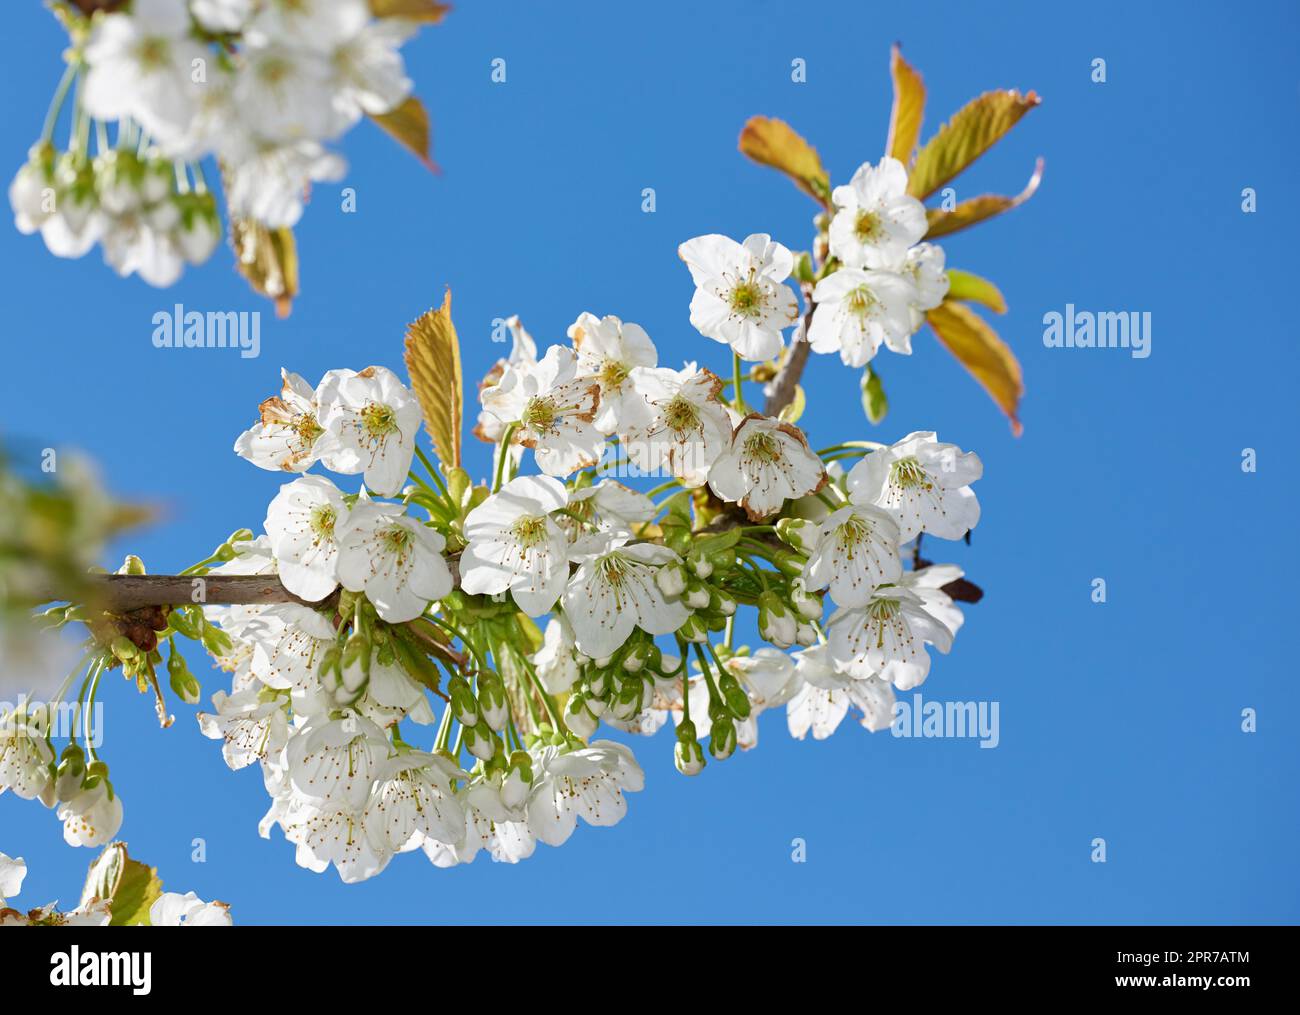 Mirabella fleurit au printemps. Gros plan de fleurs blanches sur la branche contre le ciel bleu par un jour ensoleillé. Arbre Mirabelle en fleurs (Prunus domestica L.) au printemps. Banque D'Images